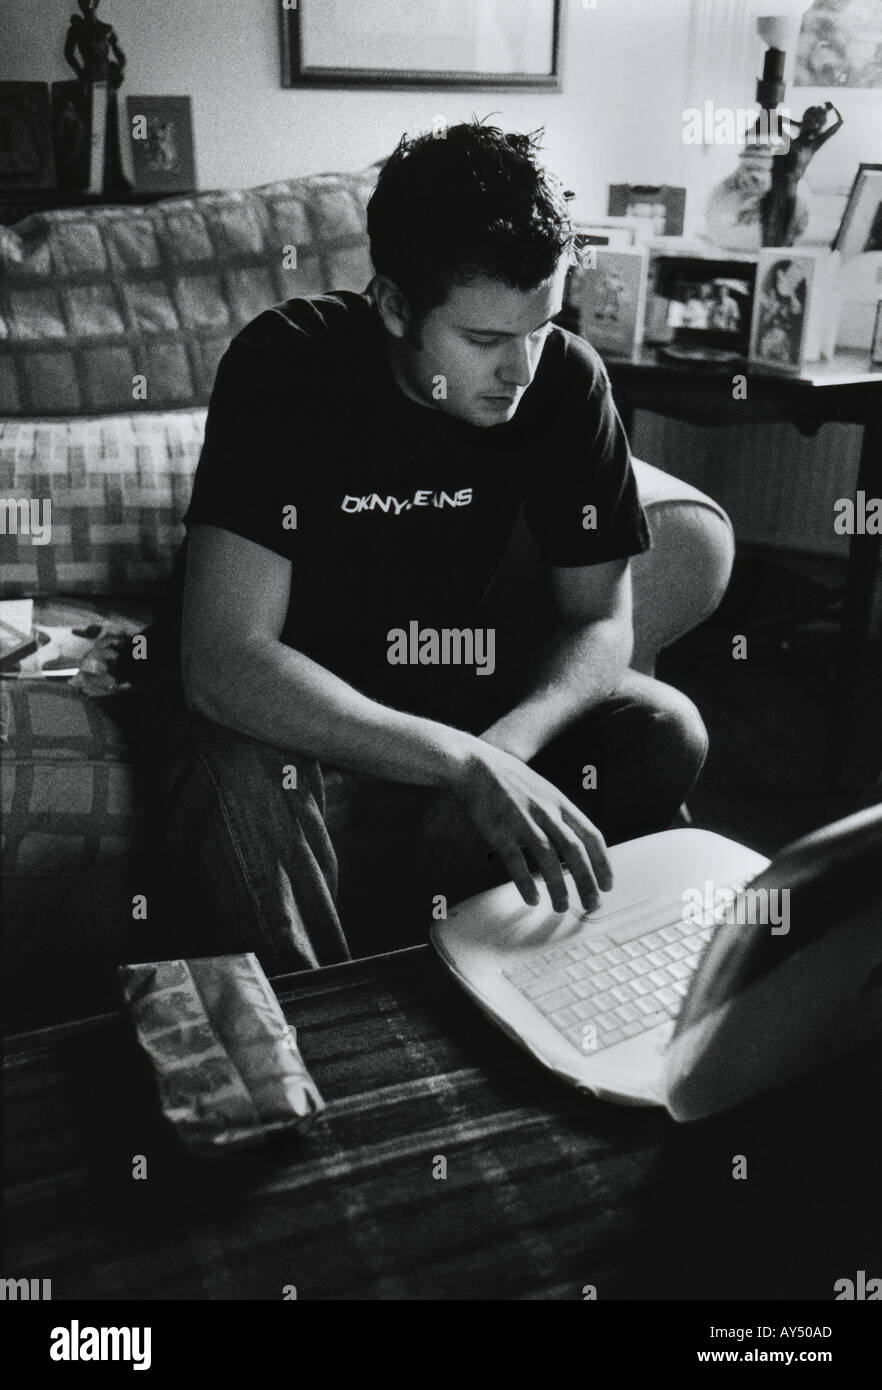 Retroilluminato in bianco e nero di un giovane uomo utilizzando un Apple iBook in una stanza di seduta Foto Stock